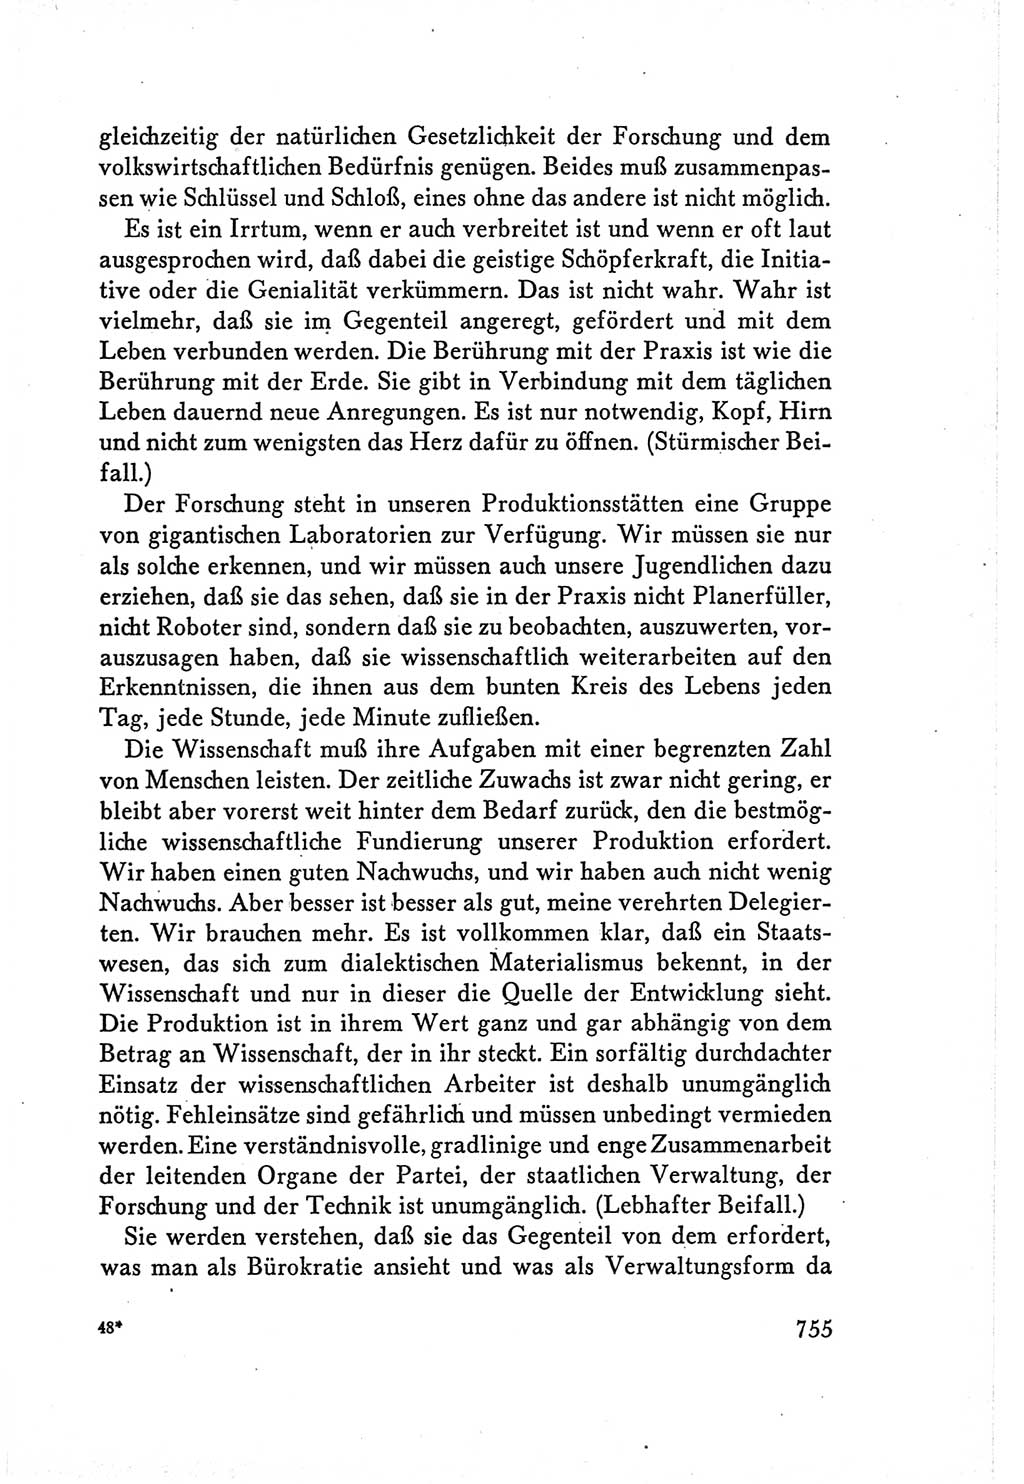 Protokoll der Verhandlungen des Ⅴ. Parteitages der Sozialistischen Einheitspartei Deutschlands (SED) [Deutsche Demokratische Republik (DDR)] 1958, Seite 755